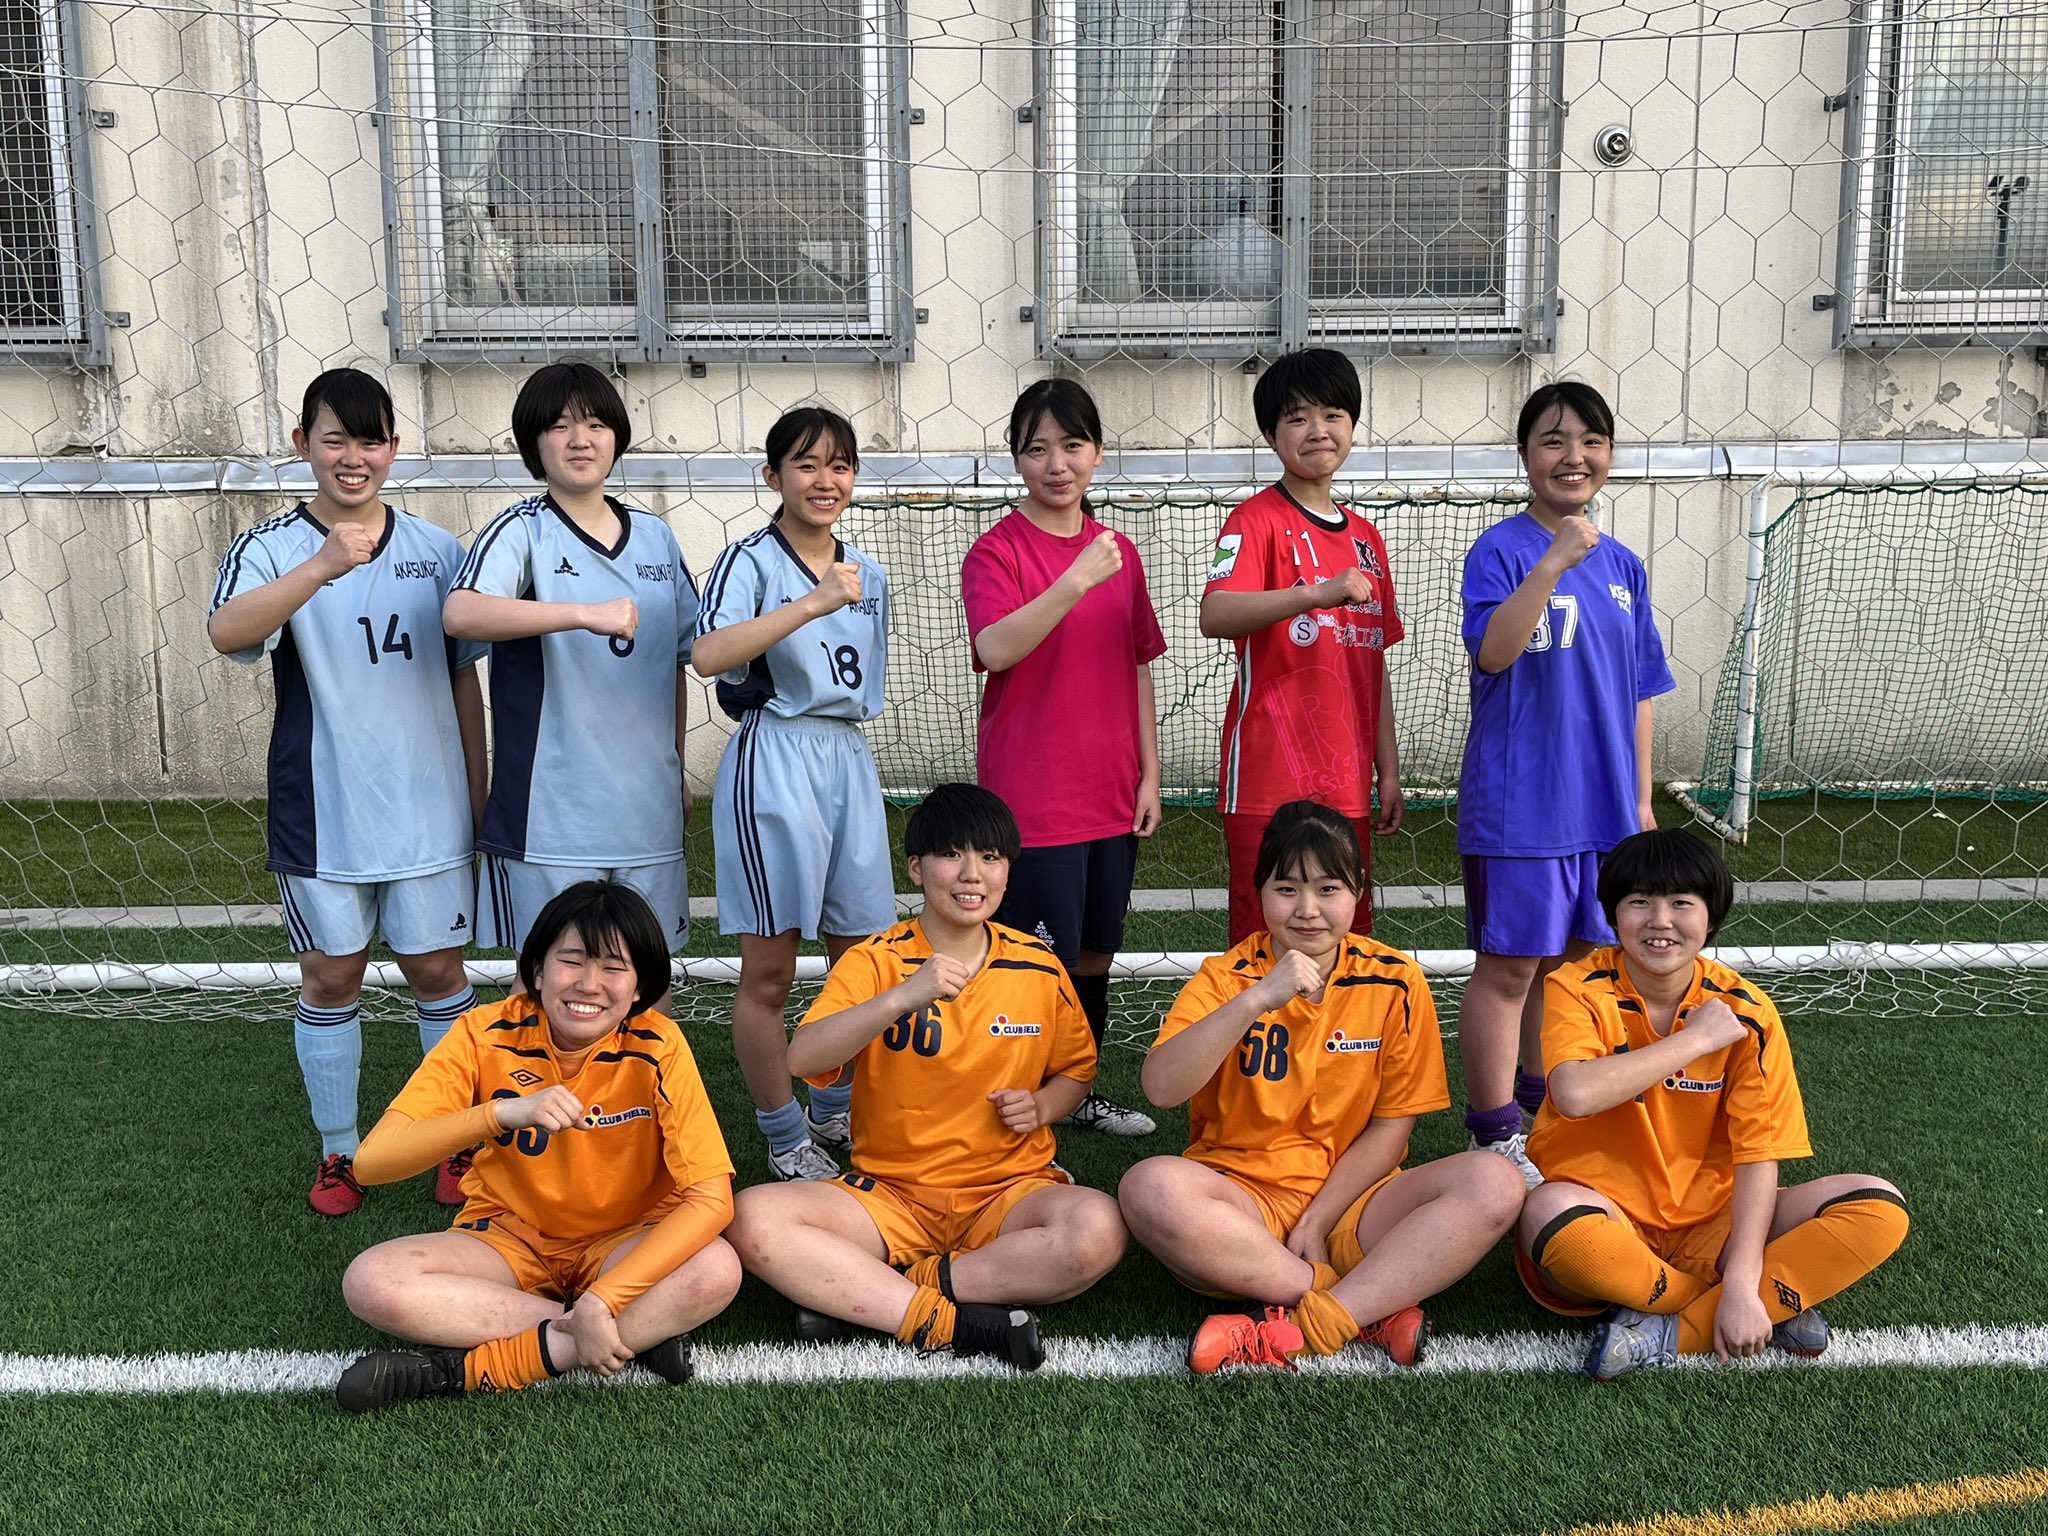 札幌大谷高校女子サッカー部 U18リーグ2部開幕 第1節vs帯広大谷 12 30キックオフ カムイの杜多目的広場 いよいよリーグ開幕です 創部して初の公式戦です 全力蹴球で チーム初勝利を目指します 応援よろしくお願いします T Co